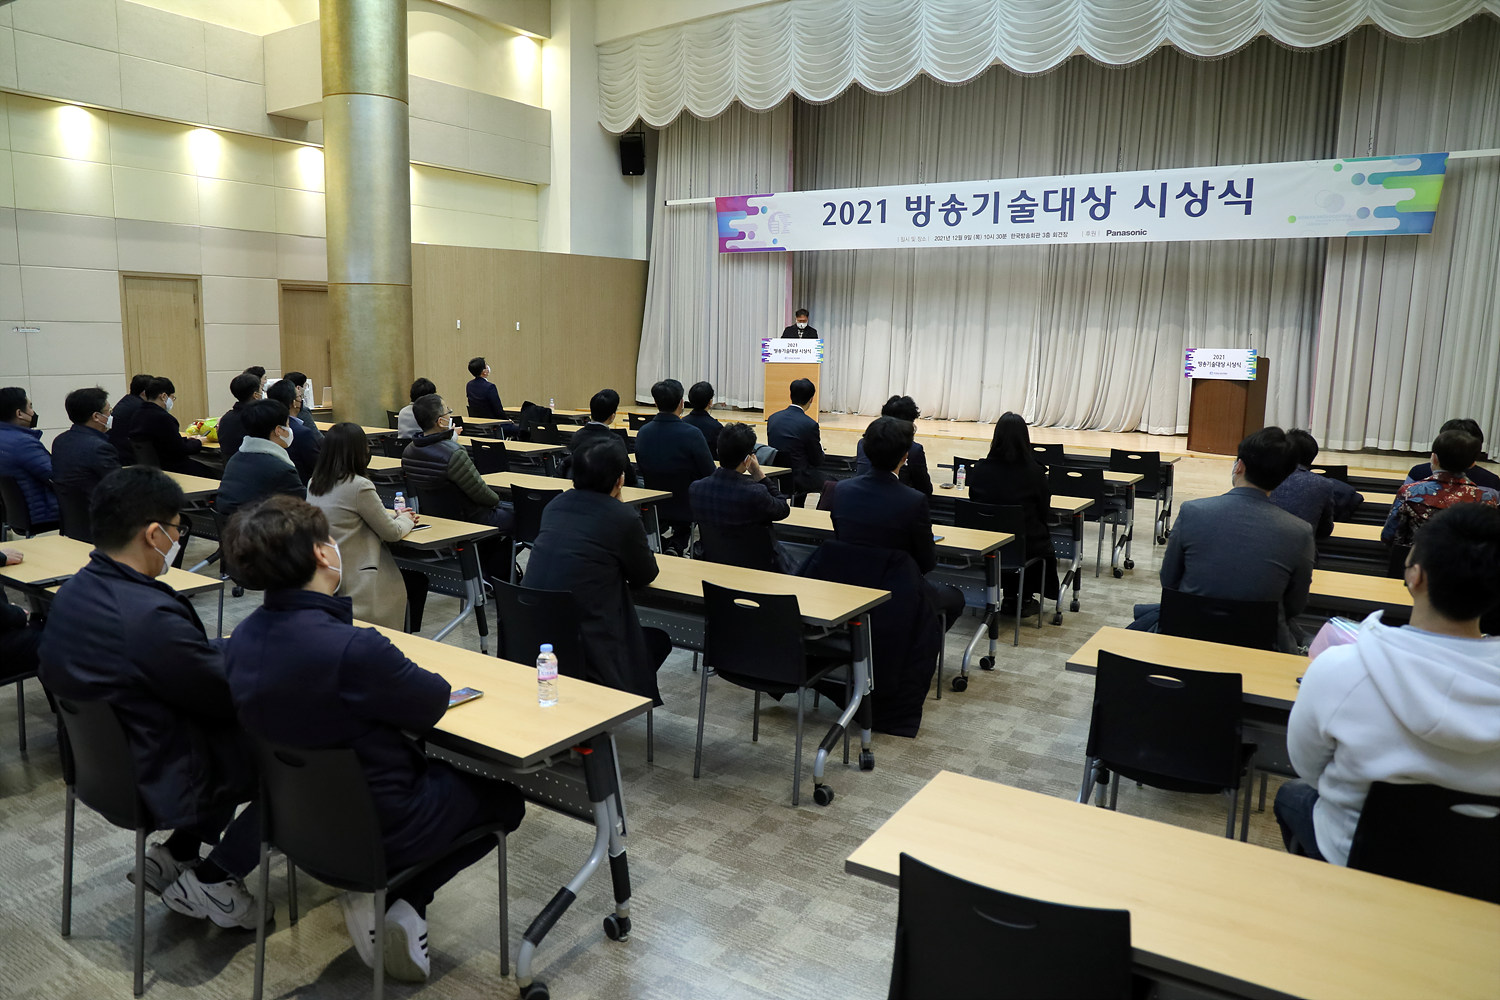 시상식이 개최된 방송회관 3층 회견장